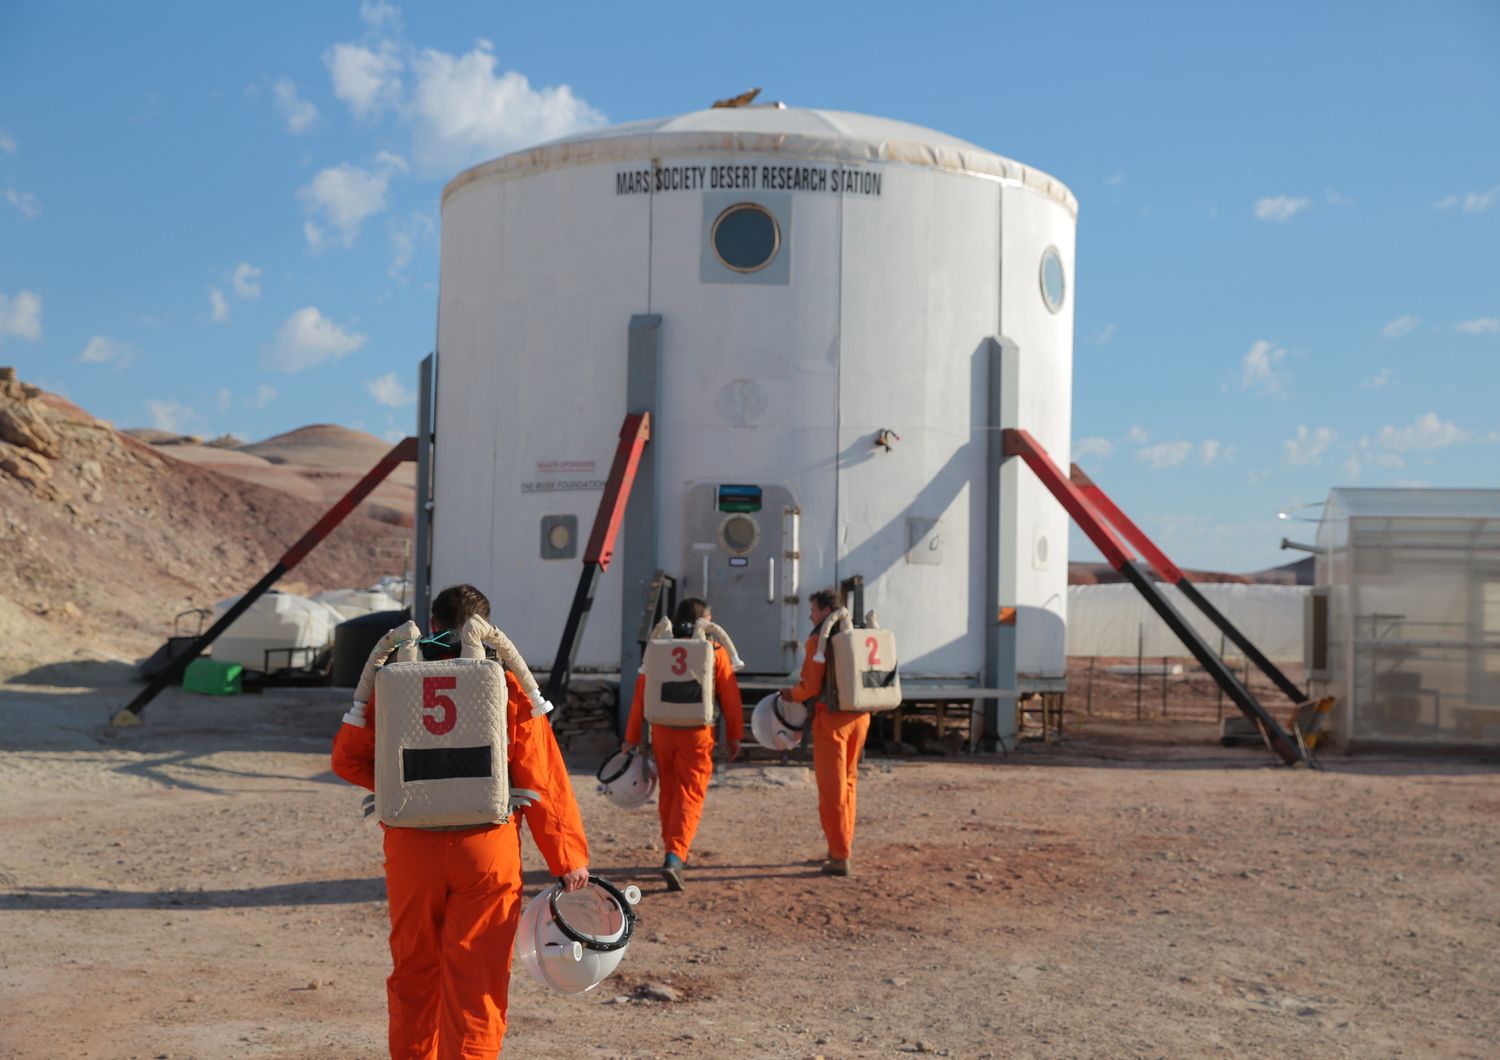 Un gruppo di designer di Ikea ha passato tre giorni nella Mars Desert Research Station nello Utah, completamente isolati, per &ldquo;avere un assaggio di quello che gli astronauti provano per tre anni&rdquo;